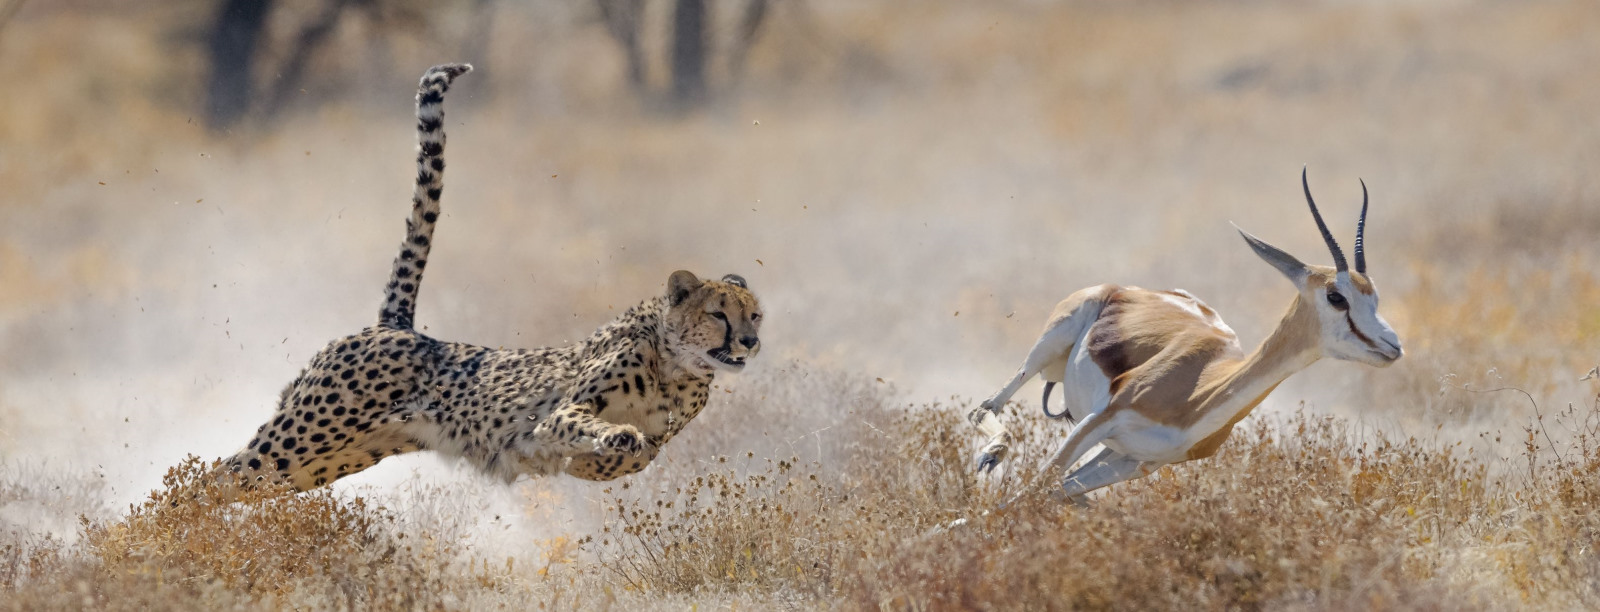 Cheetah and gazelle 2021